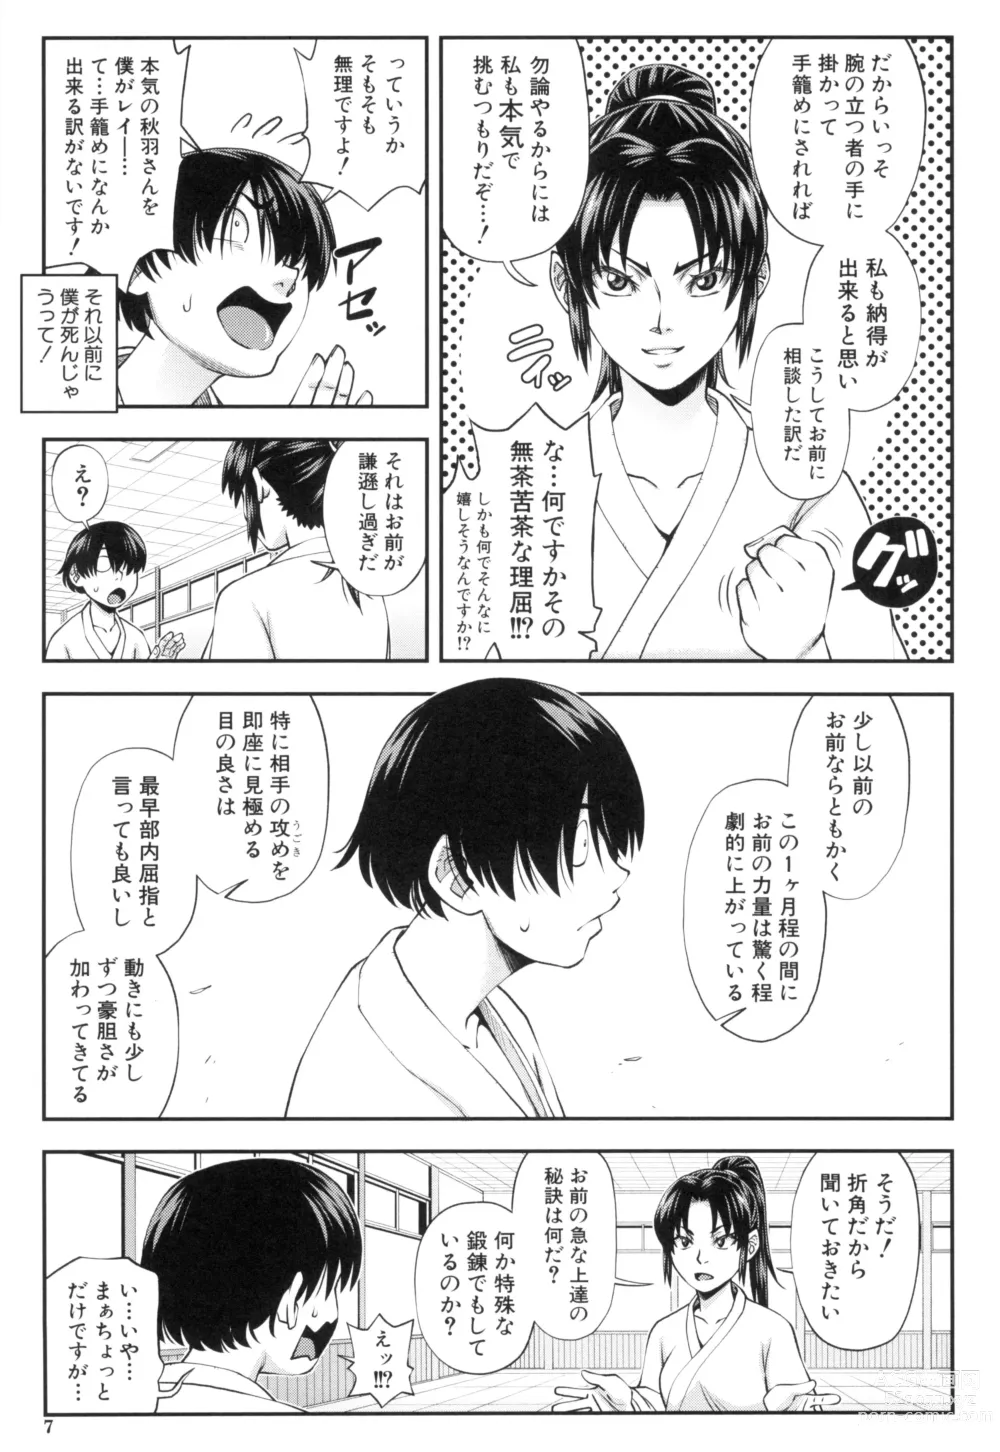 Page 9 of manga Yareba Yaru Hodo Suki ni Naru